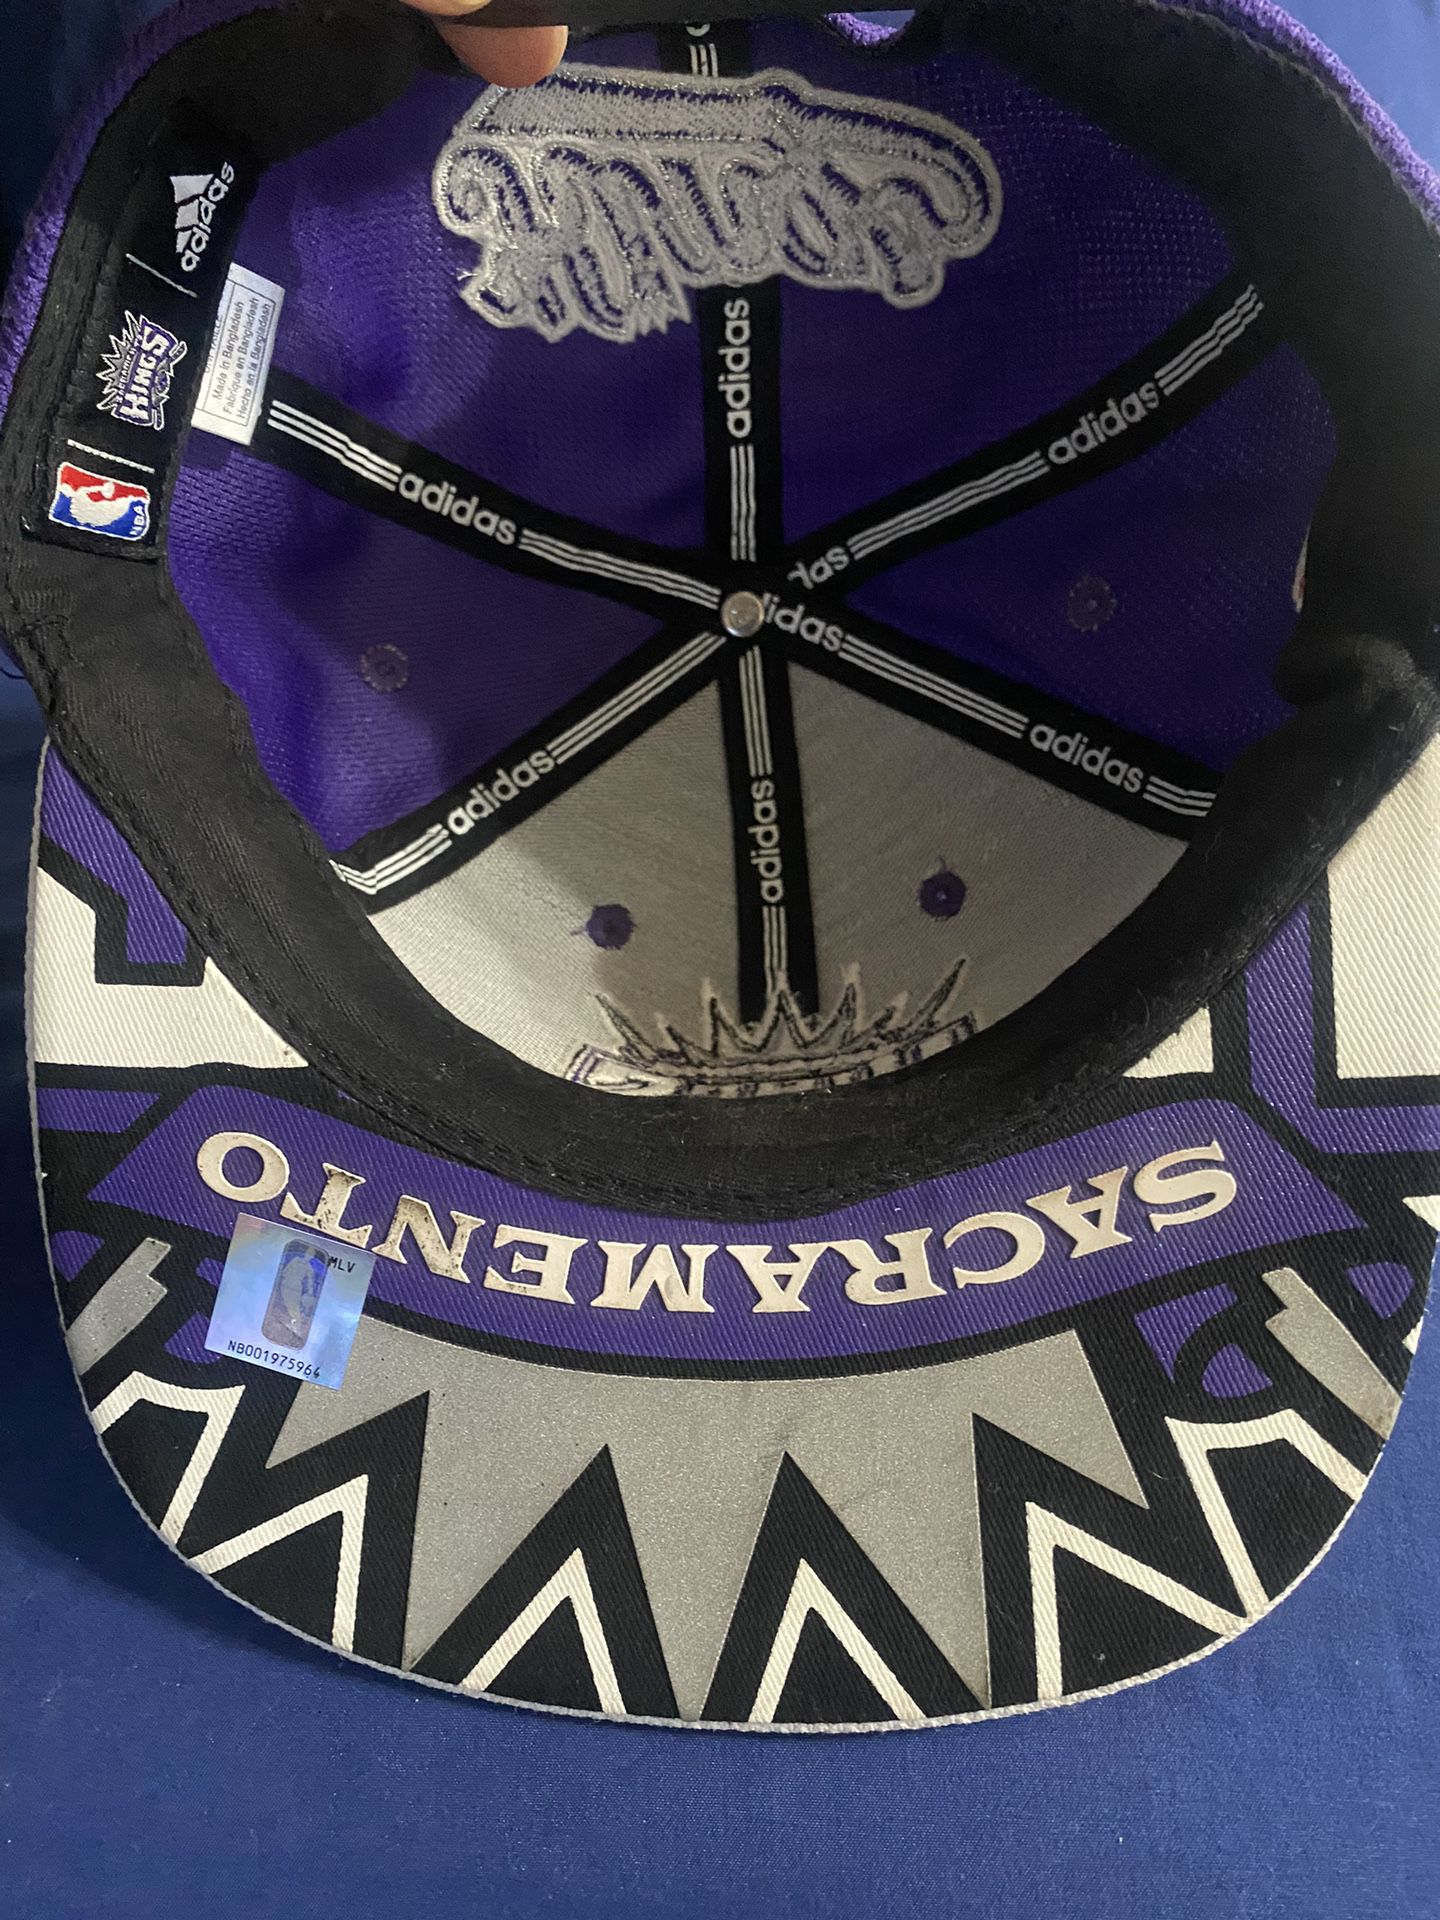 Sacramento Kings hockey jersey for Sale in Lodi, CA - OfferUp